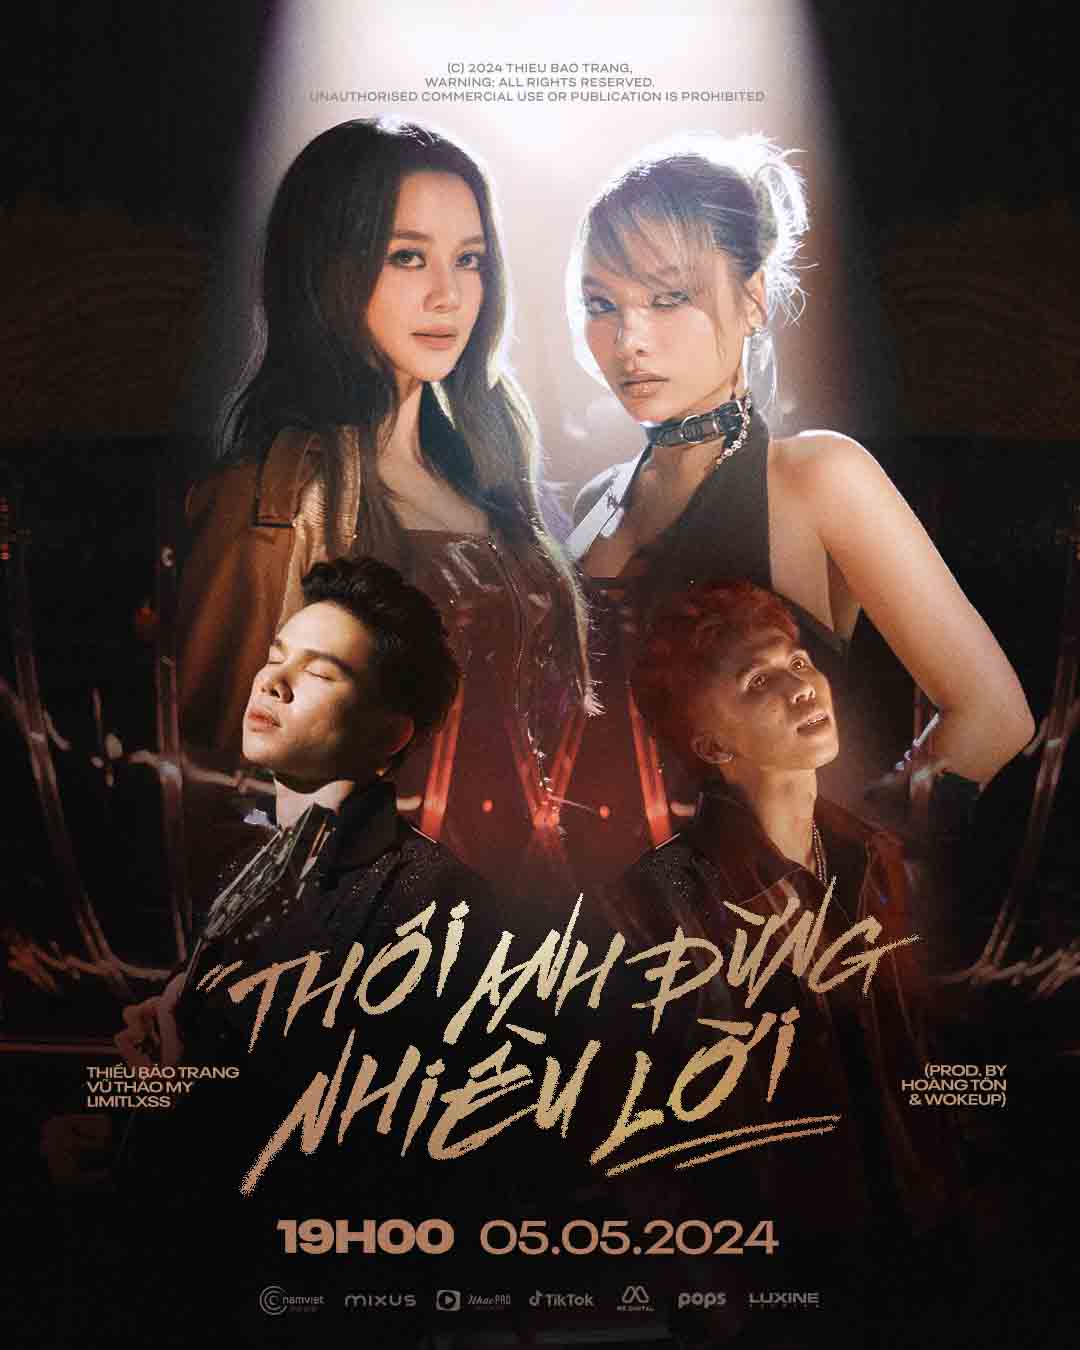 Thiều Bảo Trang tung MV thứ 3 trong vòng 6 tháng, bắt tay cùng 4 nghệ sĩ Vpop - ảnh 1